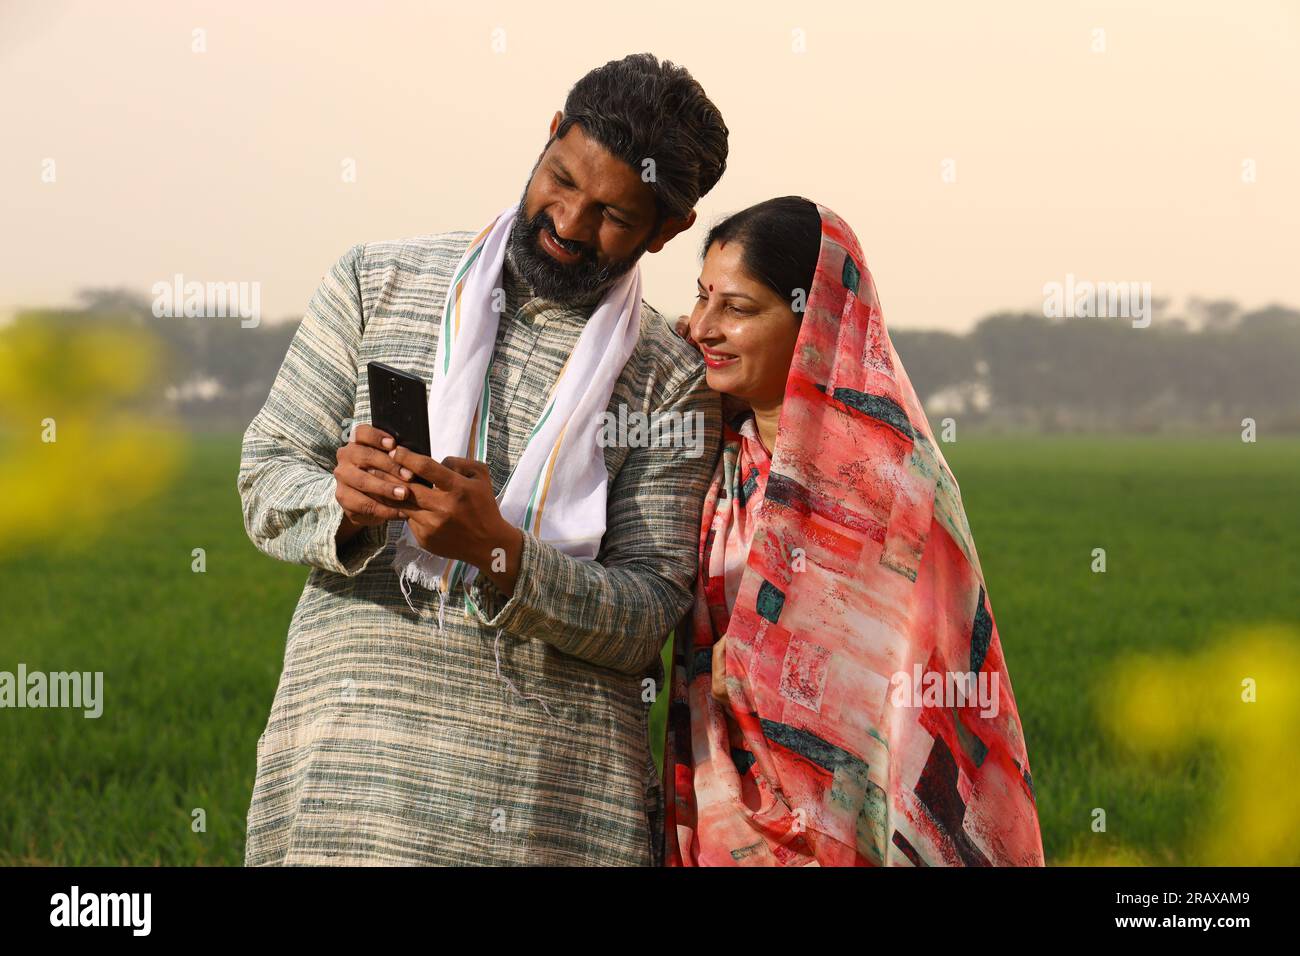 Una felice famiglia di abitanti di un villaggio rurale indiano in piedi in un marito di senape che mostra a sua moglie qualcosa sullo schermo del suo smartphone e ride Foto Stock